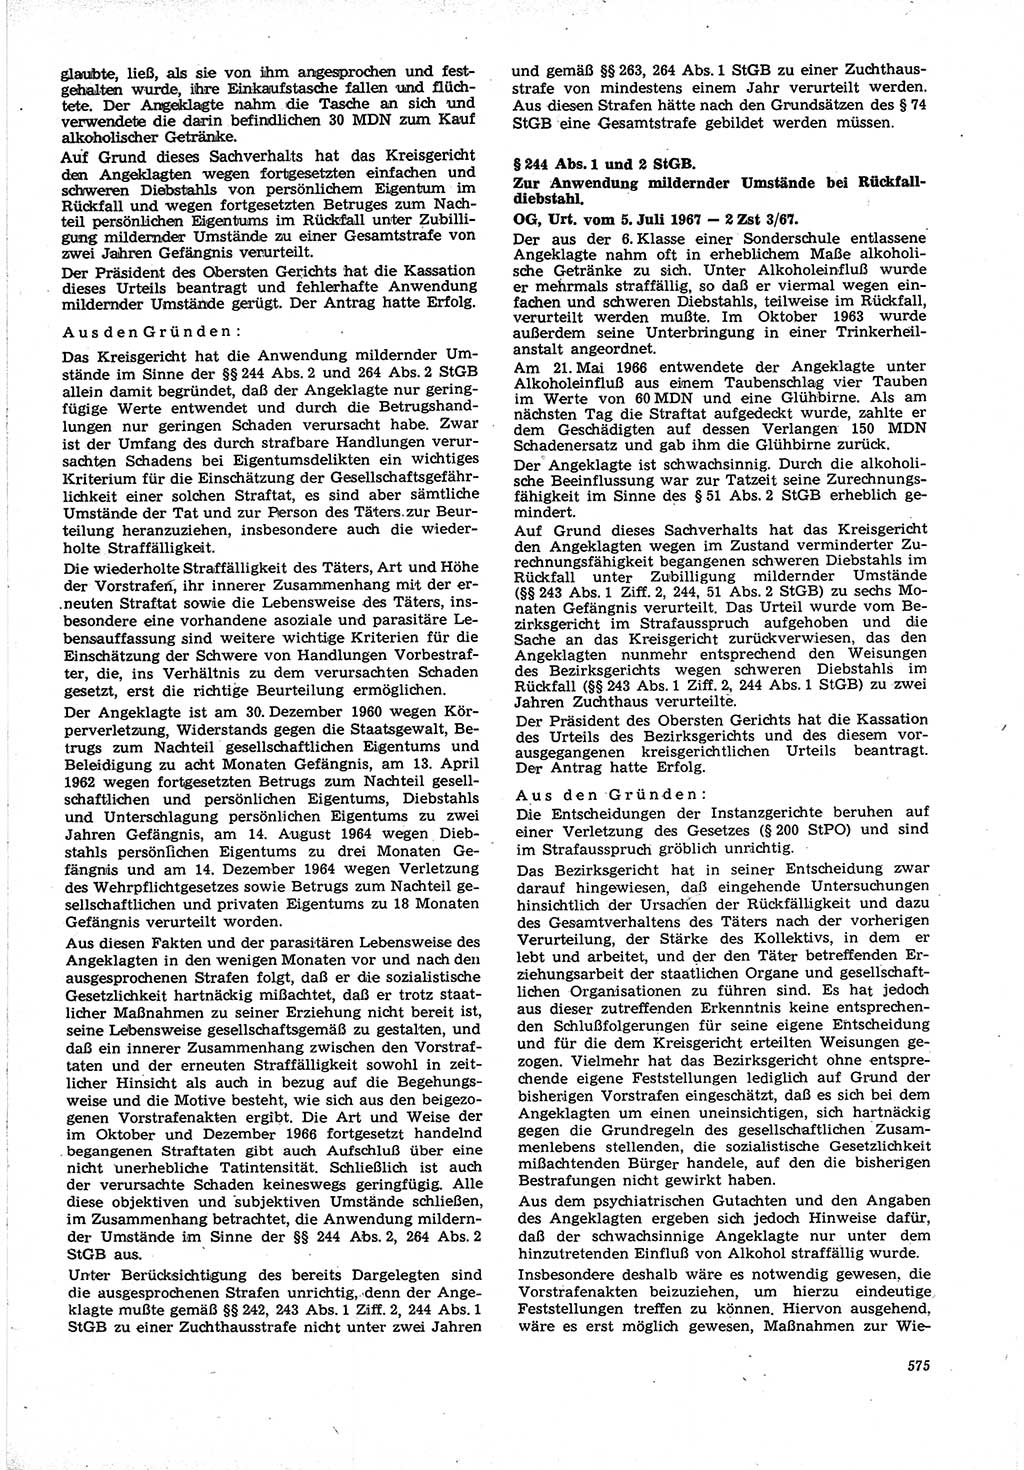 Neue Justiz (NJ), Zeitschrift für Recht und Rechtswissenschaft [Deutsche Demokratische Republik (DDR)], 21. Jahrgang 1967, Seite 575 (NJ DDR 1967, S. 575)